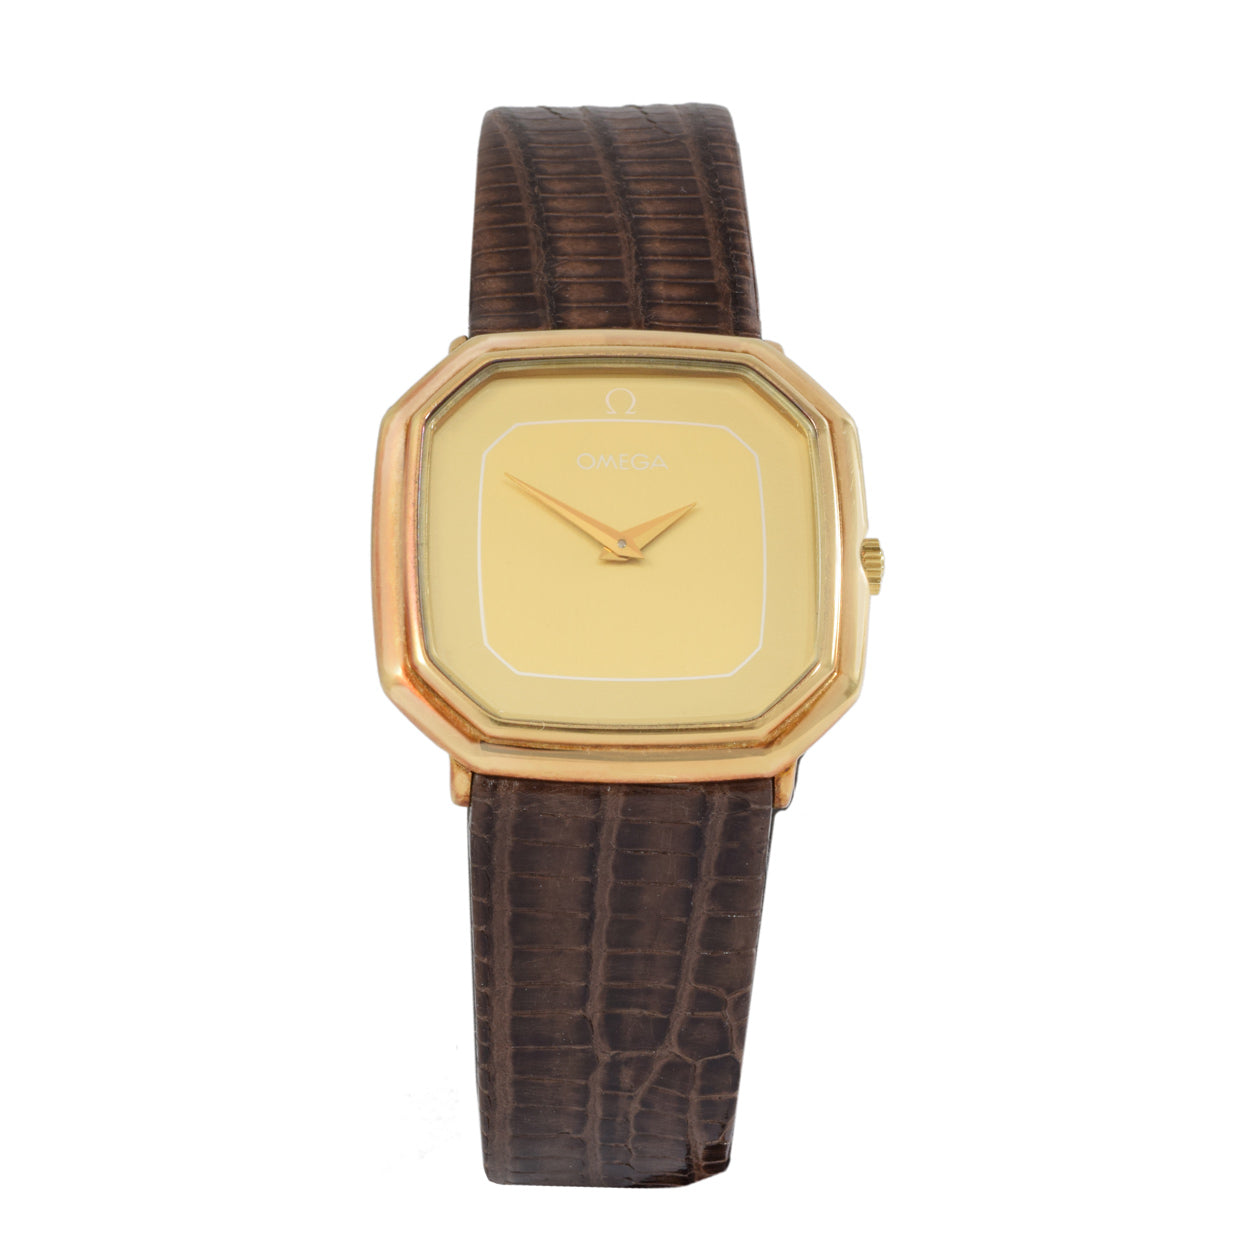 Vintage 1970's Omega 14kt gold Watch